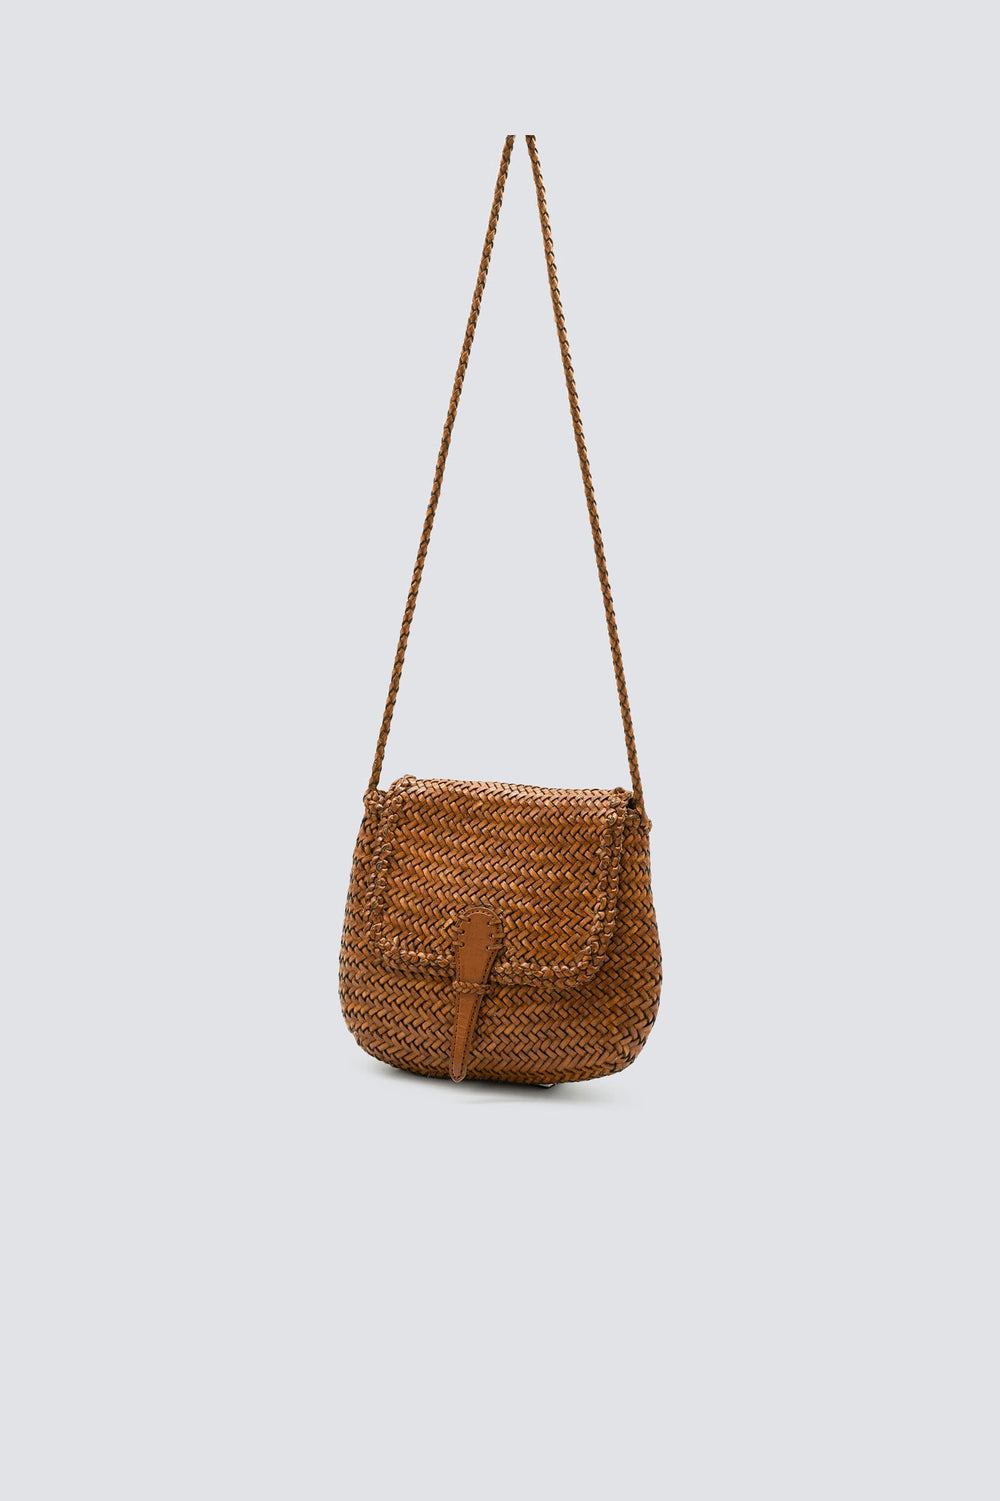 Dragon Diffusion woven leather bag handmade - Mini City Bag Tan